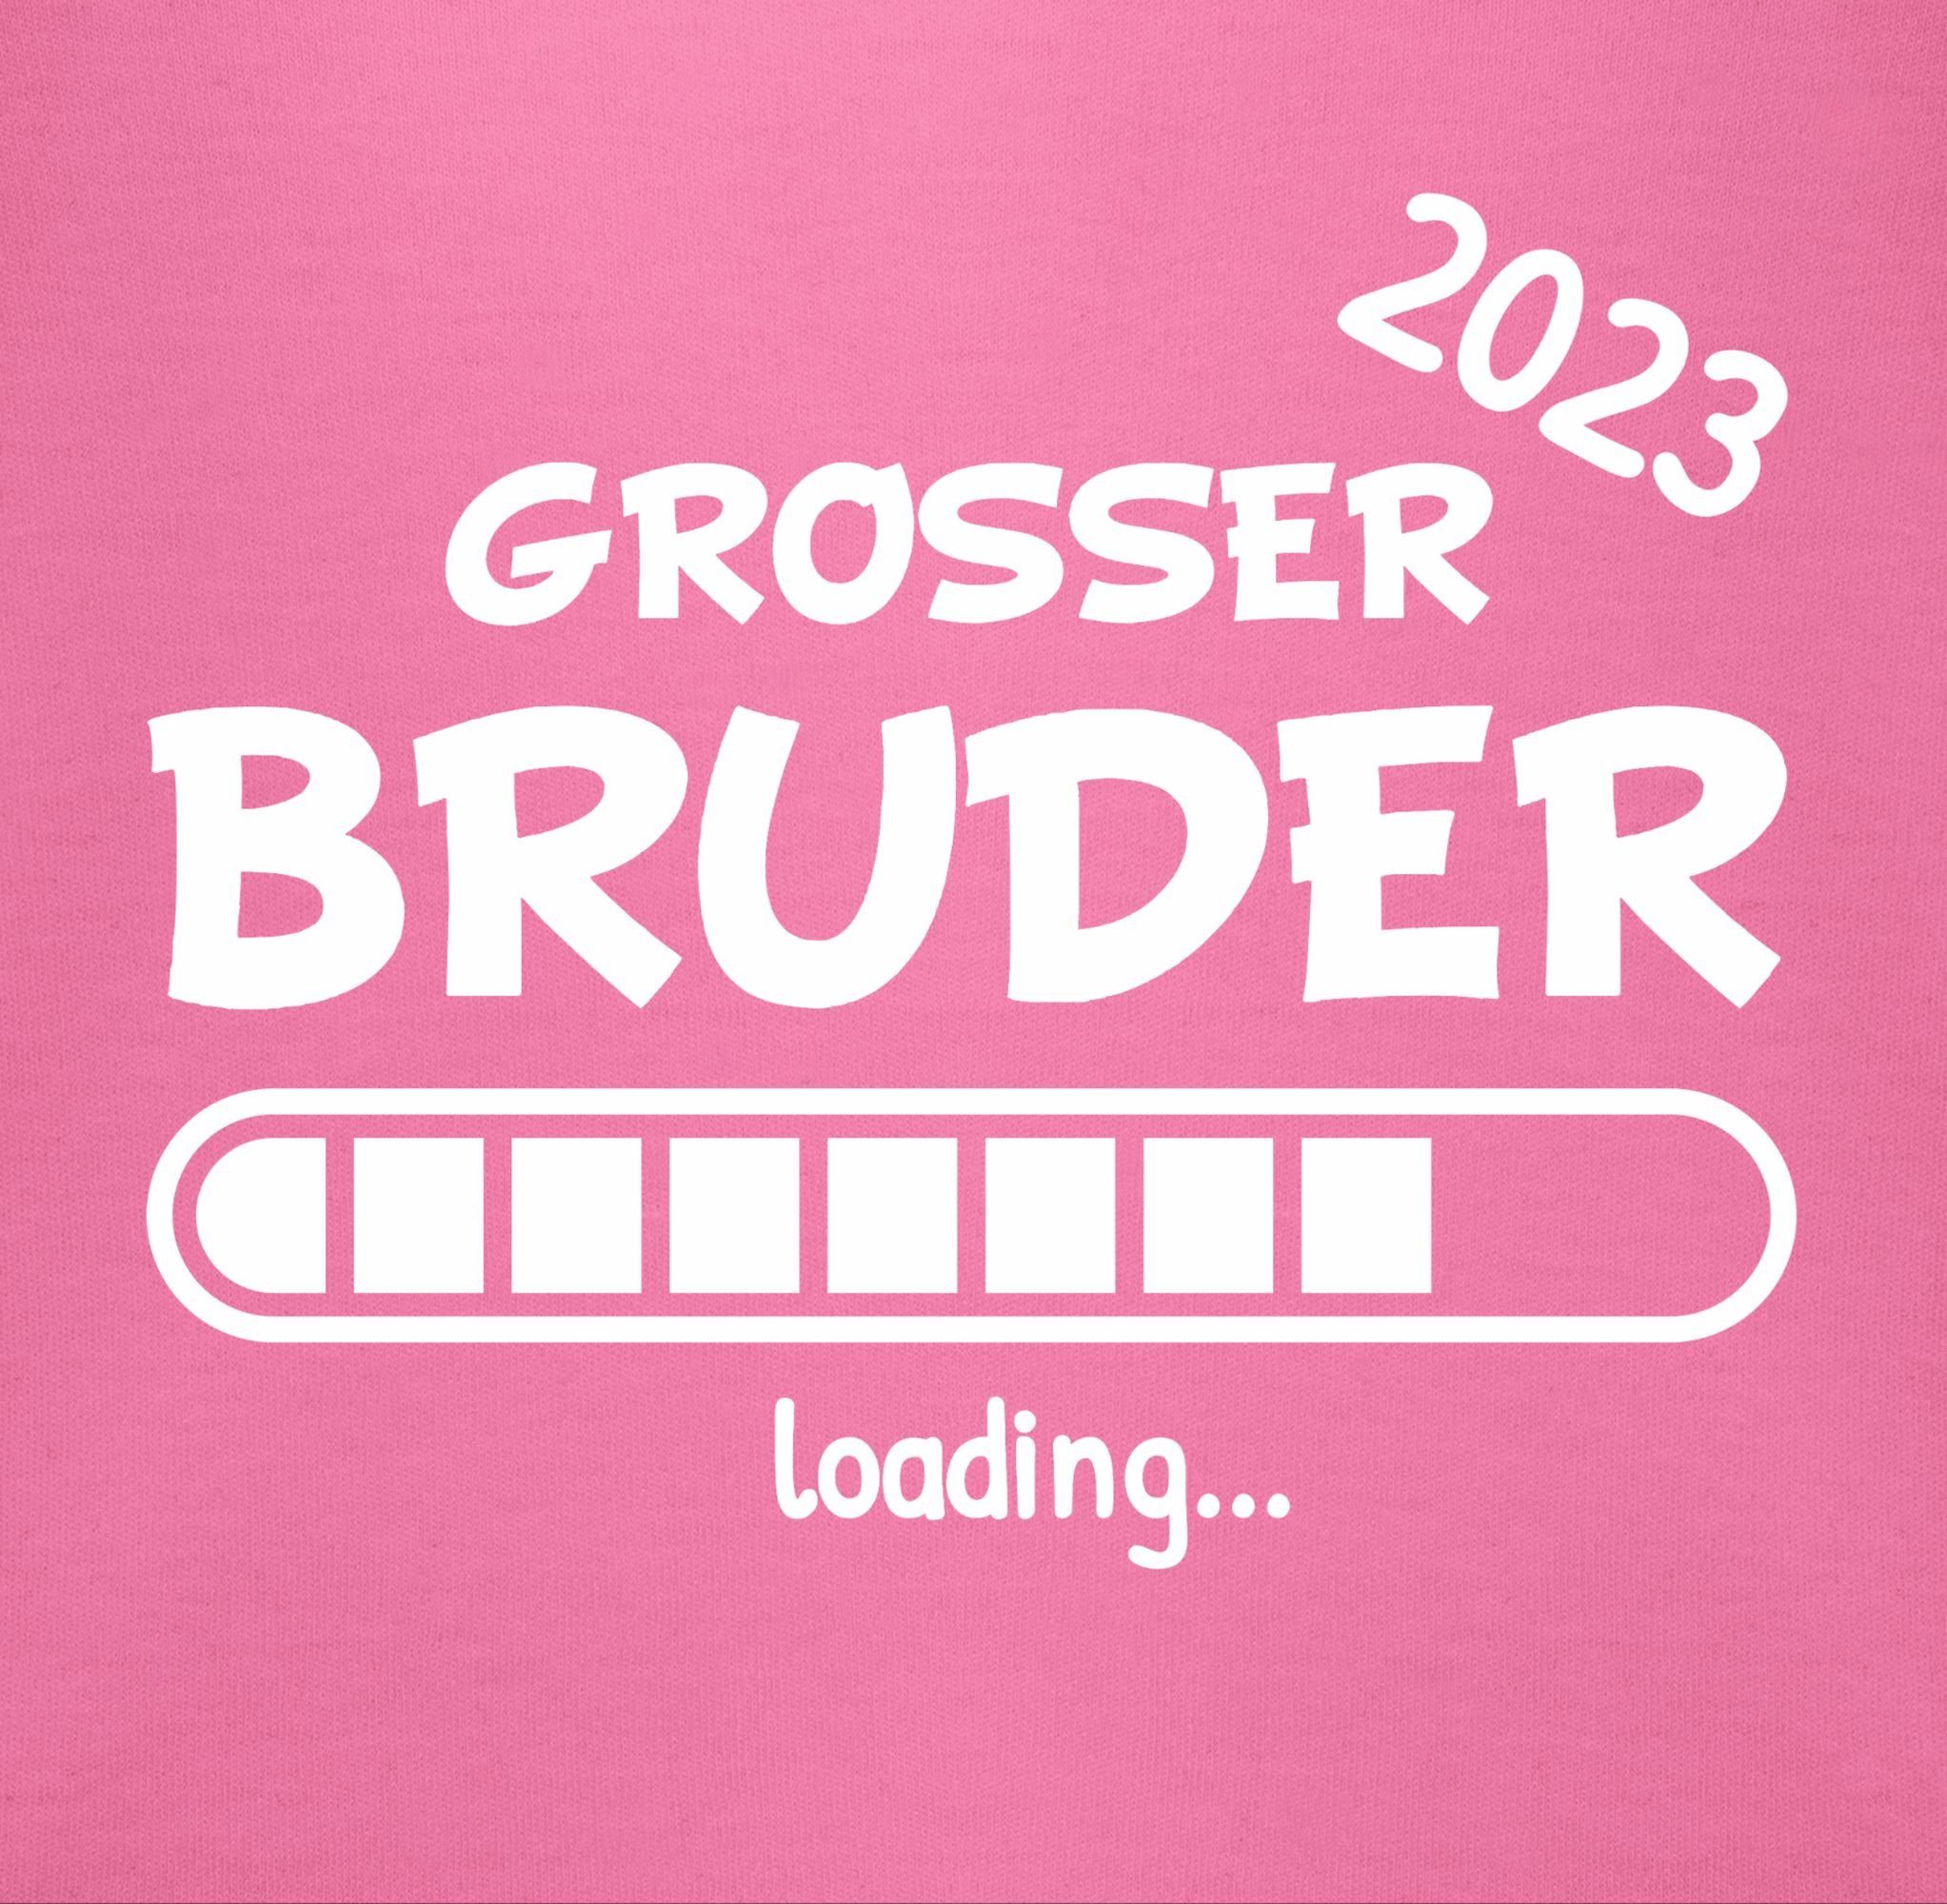 Shirtracer Sweatshirt Bruder 2023 3 loading Großer Pink Bruder Großer